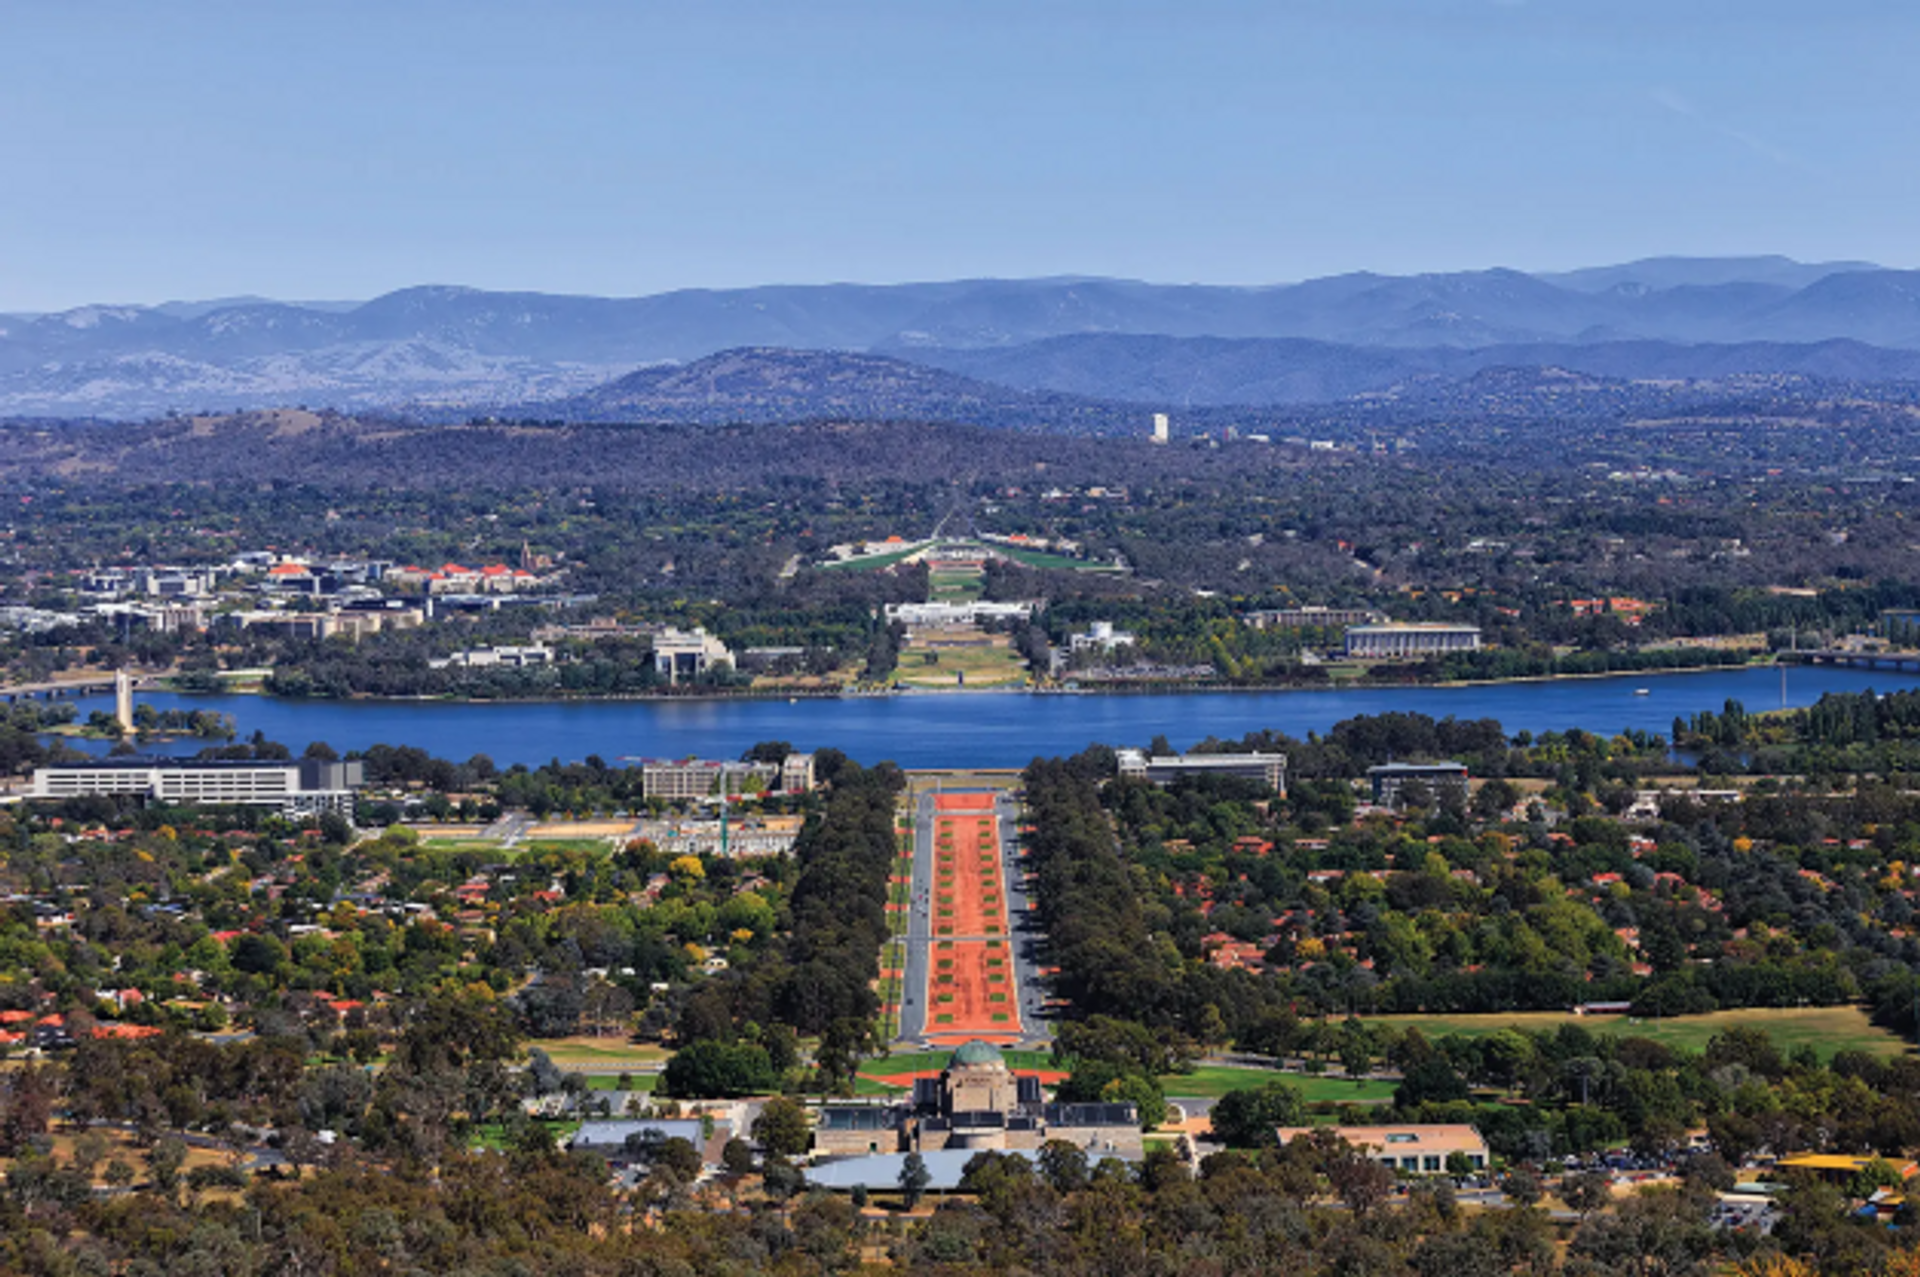 Ngurra sera situé sur la rive du lac Burley Griffin, à Canberra, près du Parlement et de l’Australian War Memorial. Photo : Taras Vyshnya/Alamy